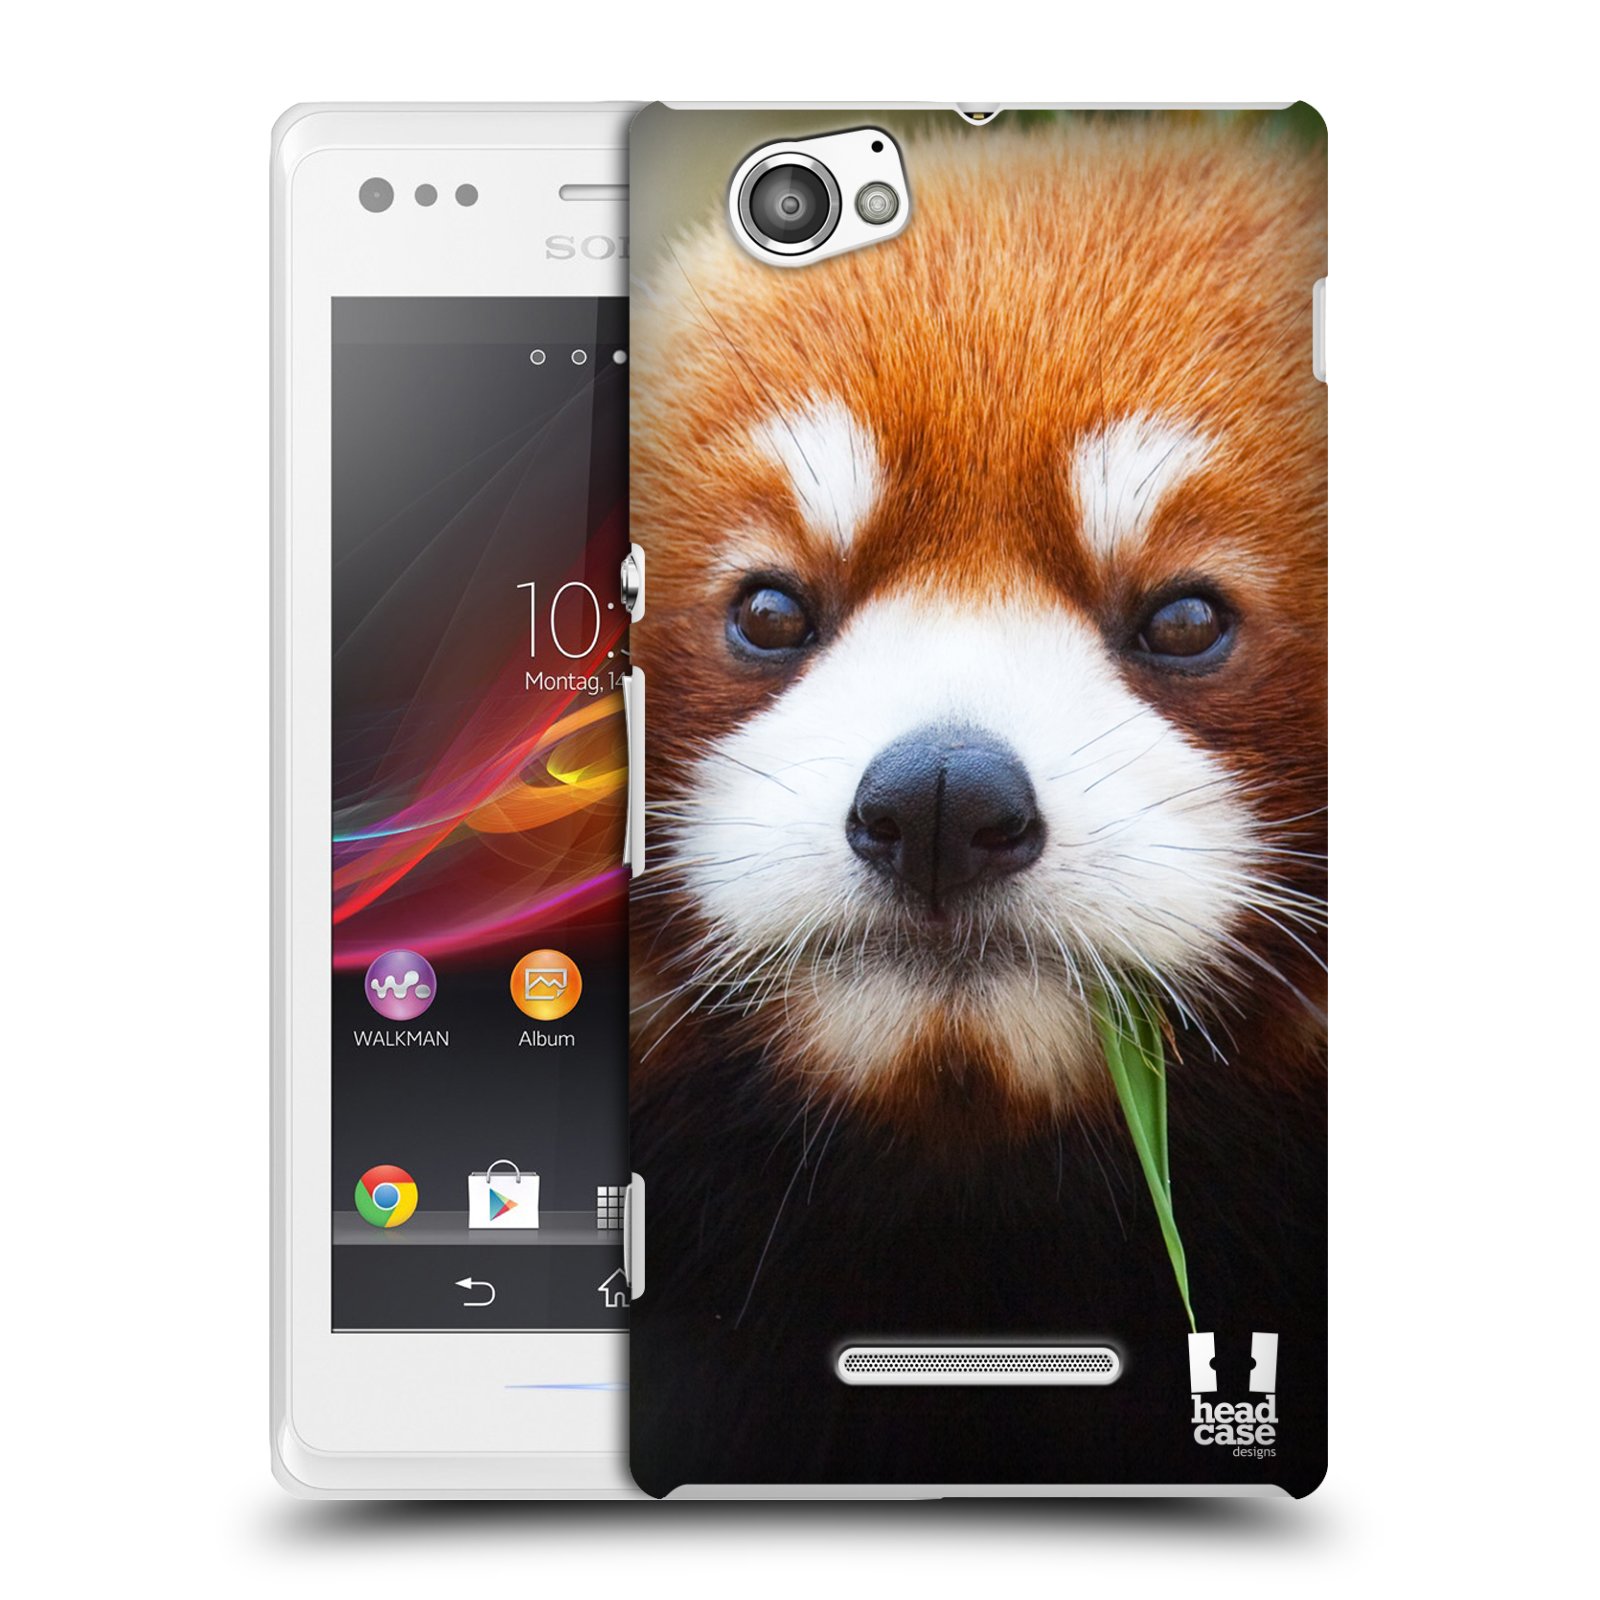 HEAD CASE plastový obal na mobil Sony Xperia M vzor Divočina, Divoký život a zvířata foto PANDA HNĚDÁ